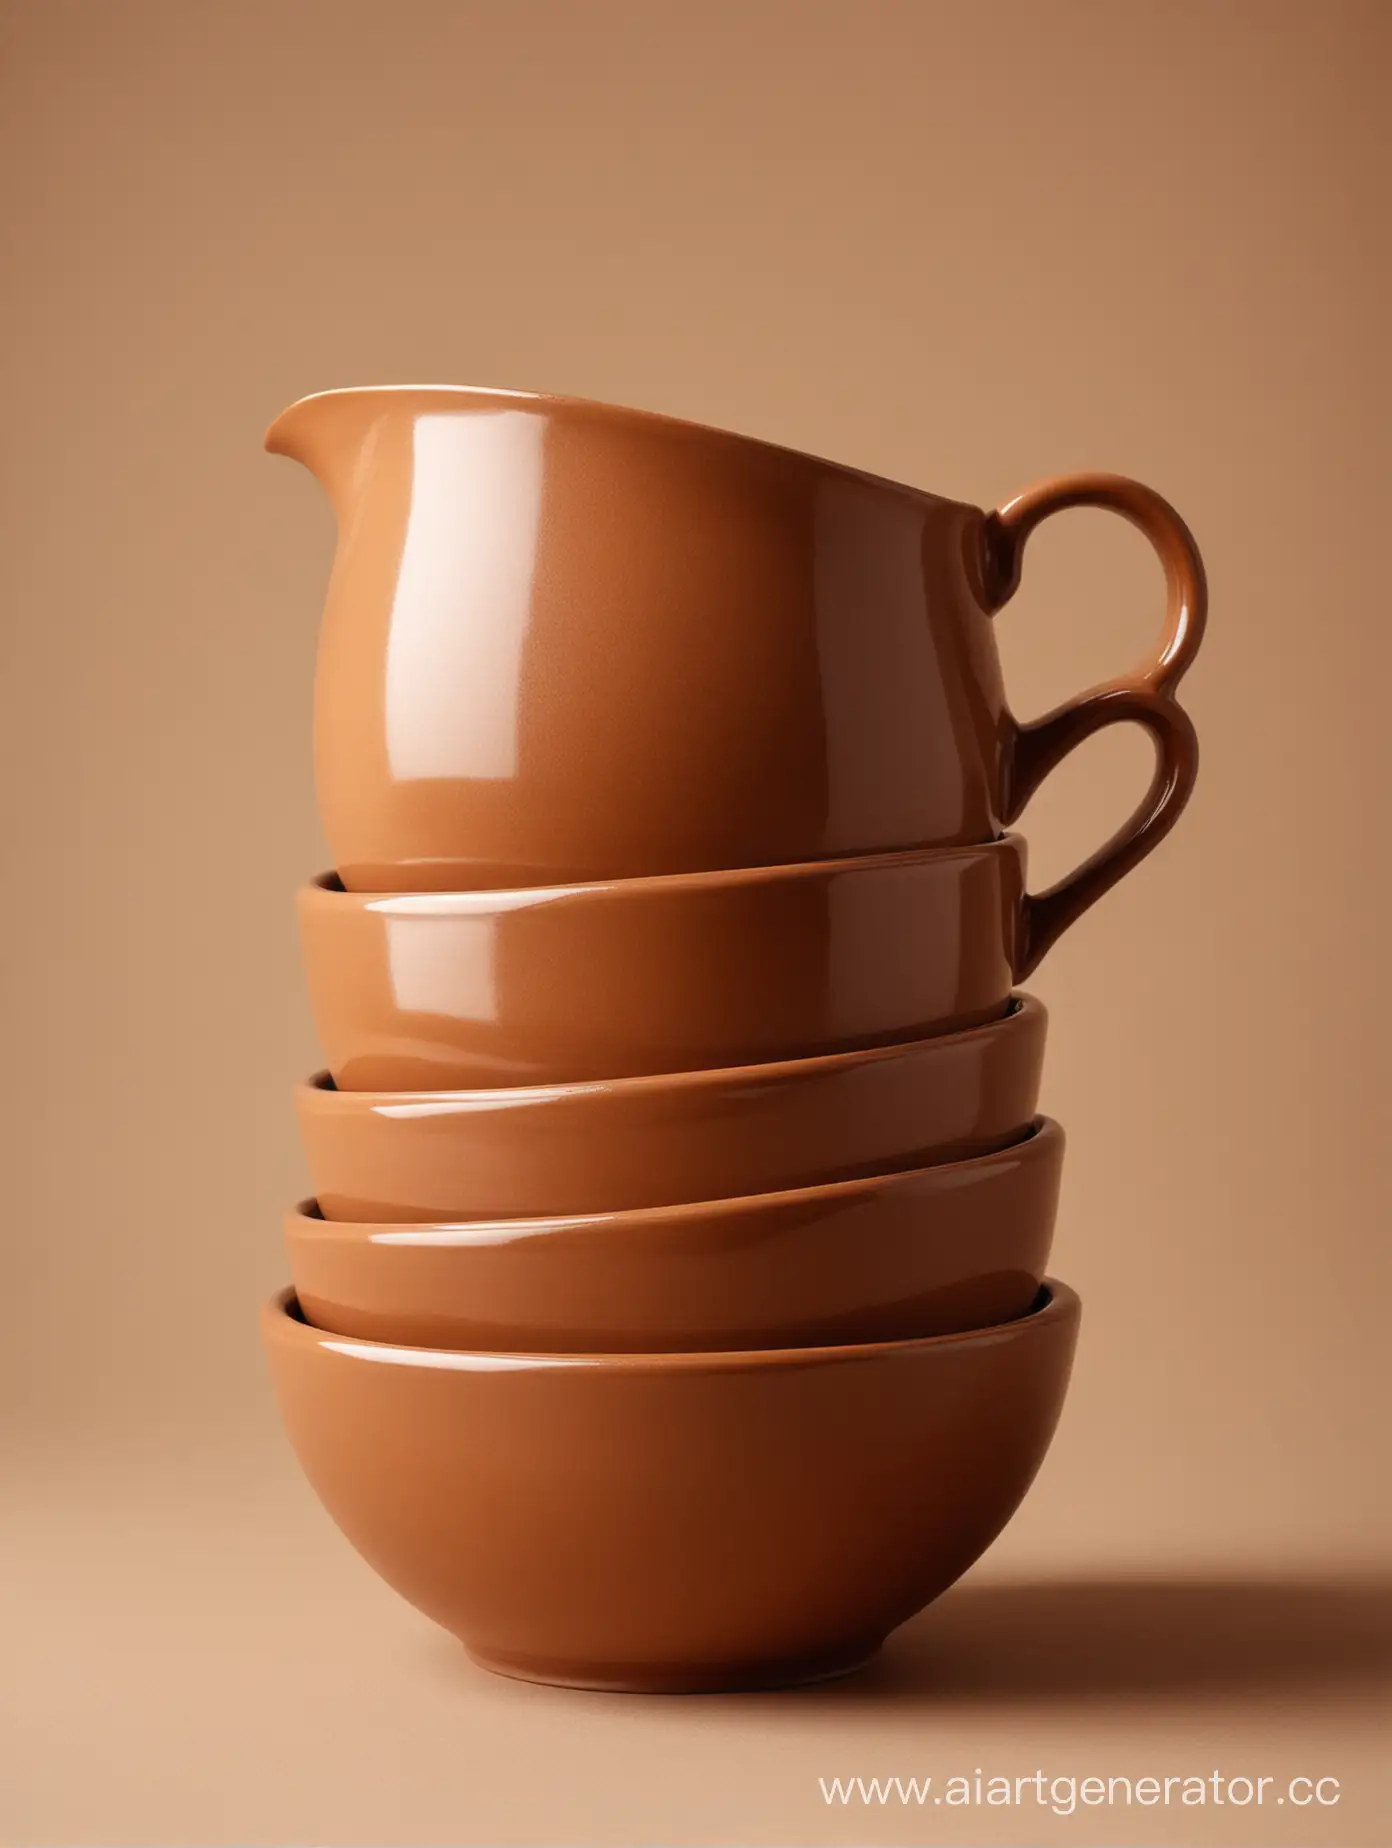 Minimalist-Brown-Ceramic-Ware-on-Beige-Background